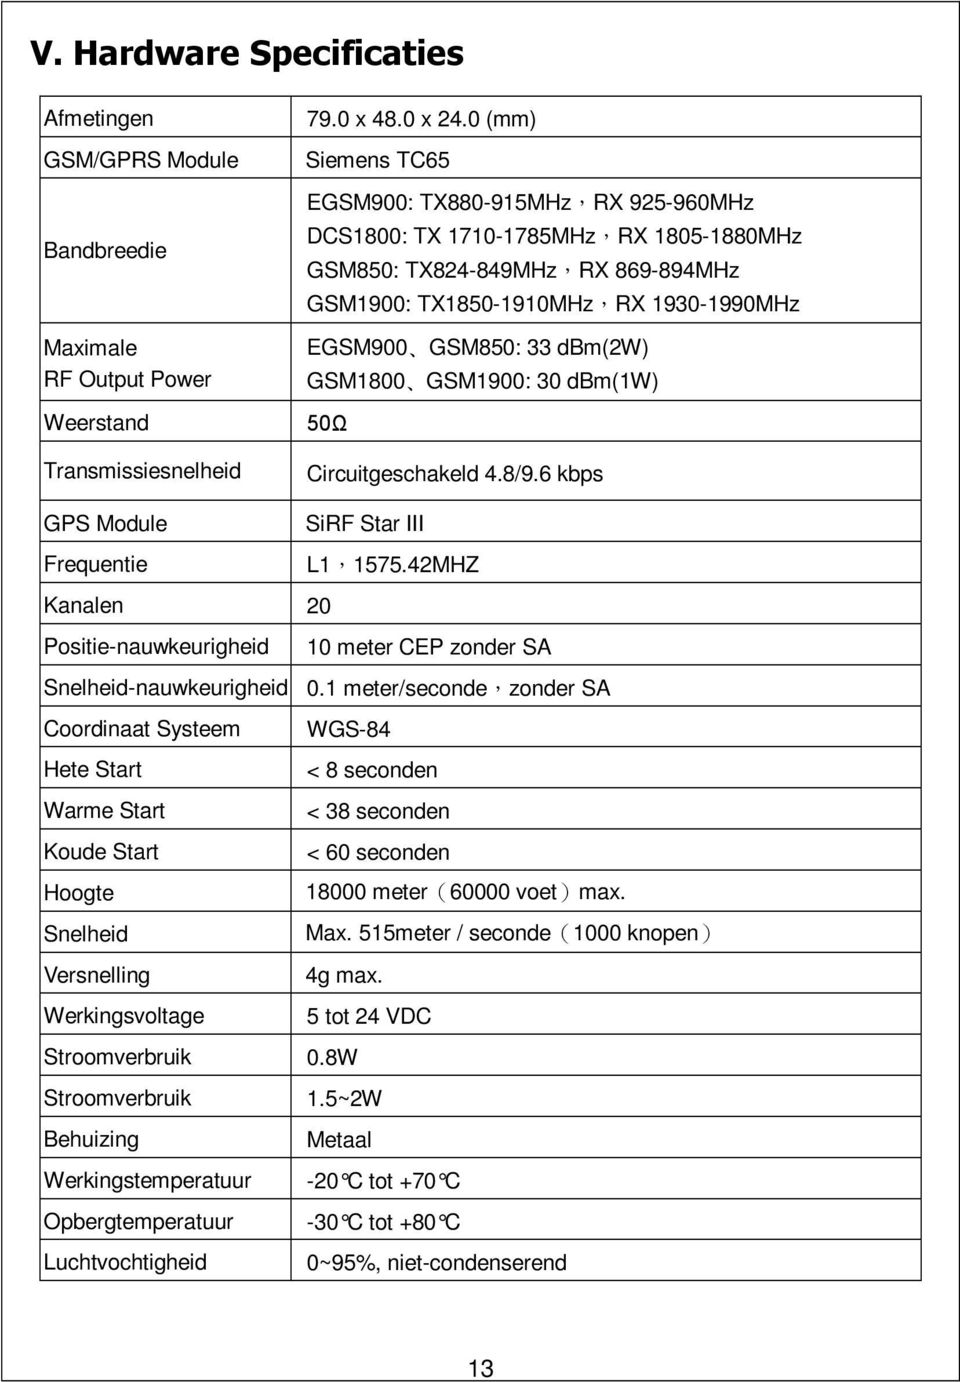 GSM1800 GSM1900: 30 dbm(1w) 50Ω Circuitgeschakeld 4.8/9.6 kbps GPS Module SiRF Star III Frequentie L1,1575.42MHZ Kanalen 20 Positie-nauwkeurigheid 10 meter CEP zonder SA Snelheid-nauwkeurigheid 0.